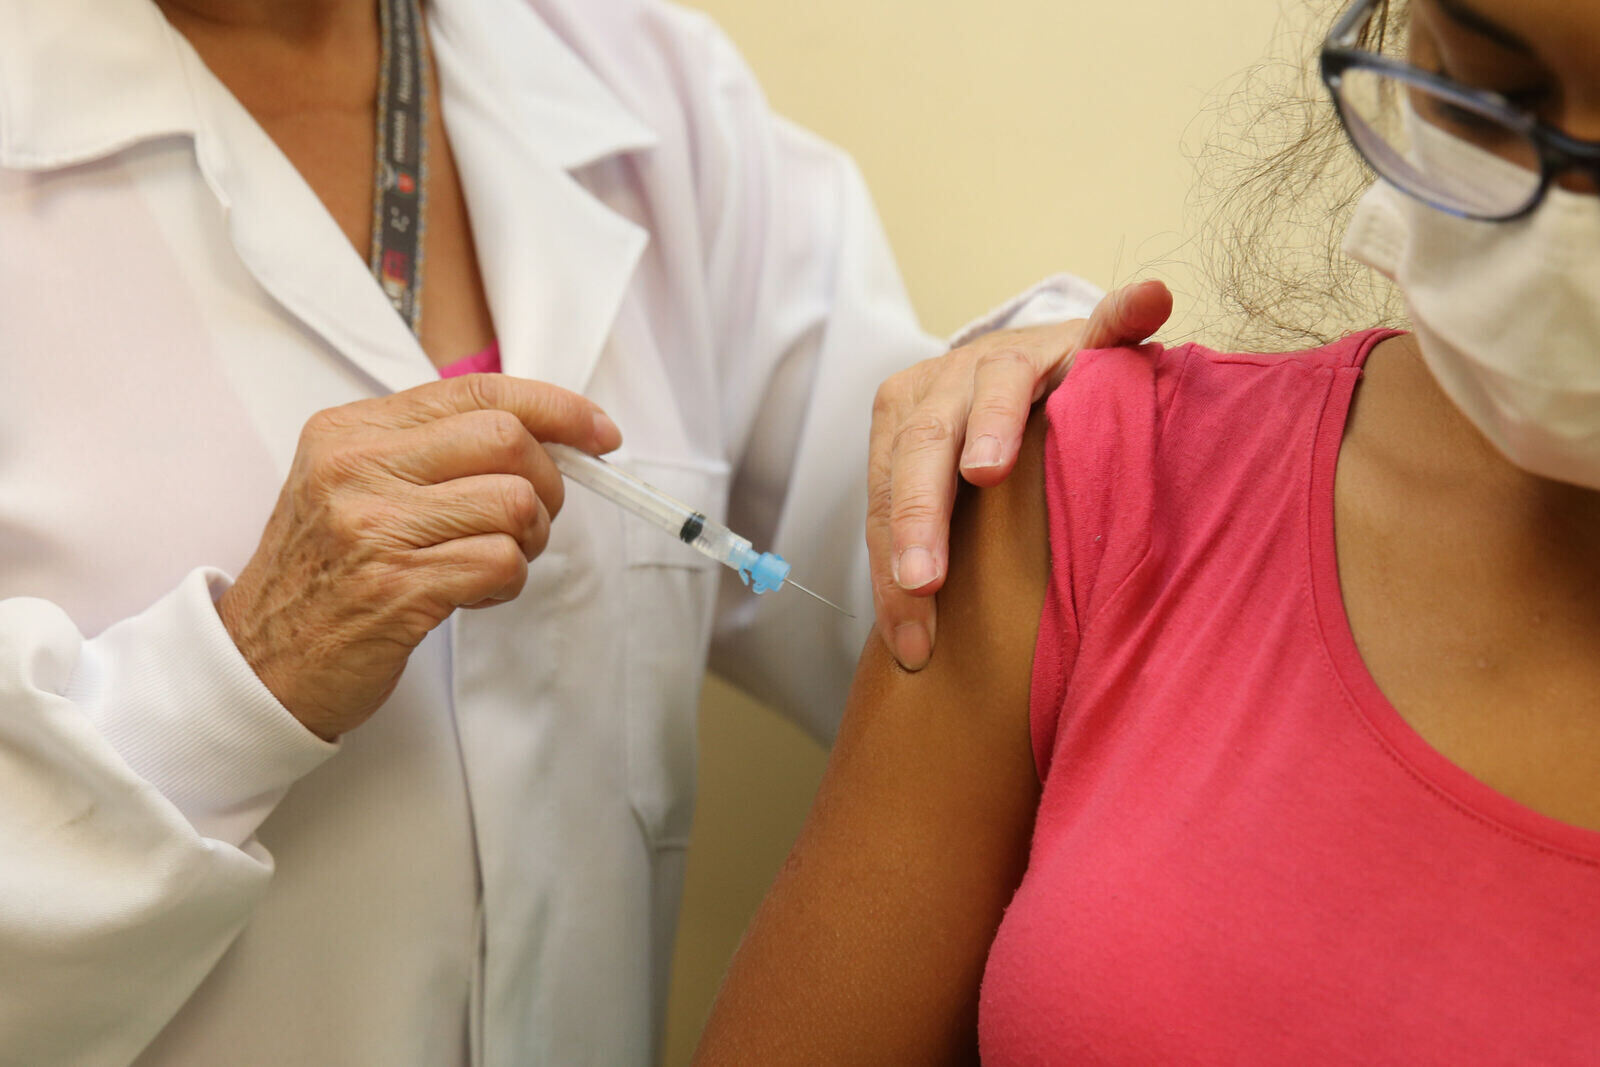 Paraná supera marca de 2 milhões de doses de vacinas aplicadas contra a Covid-19